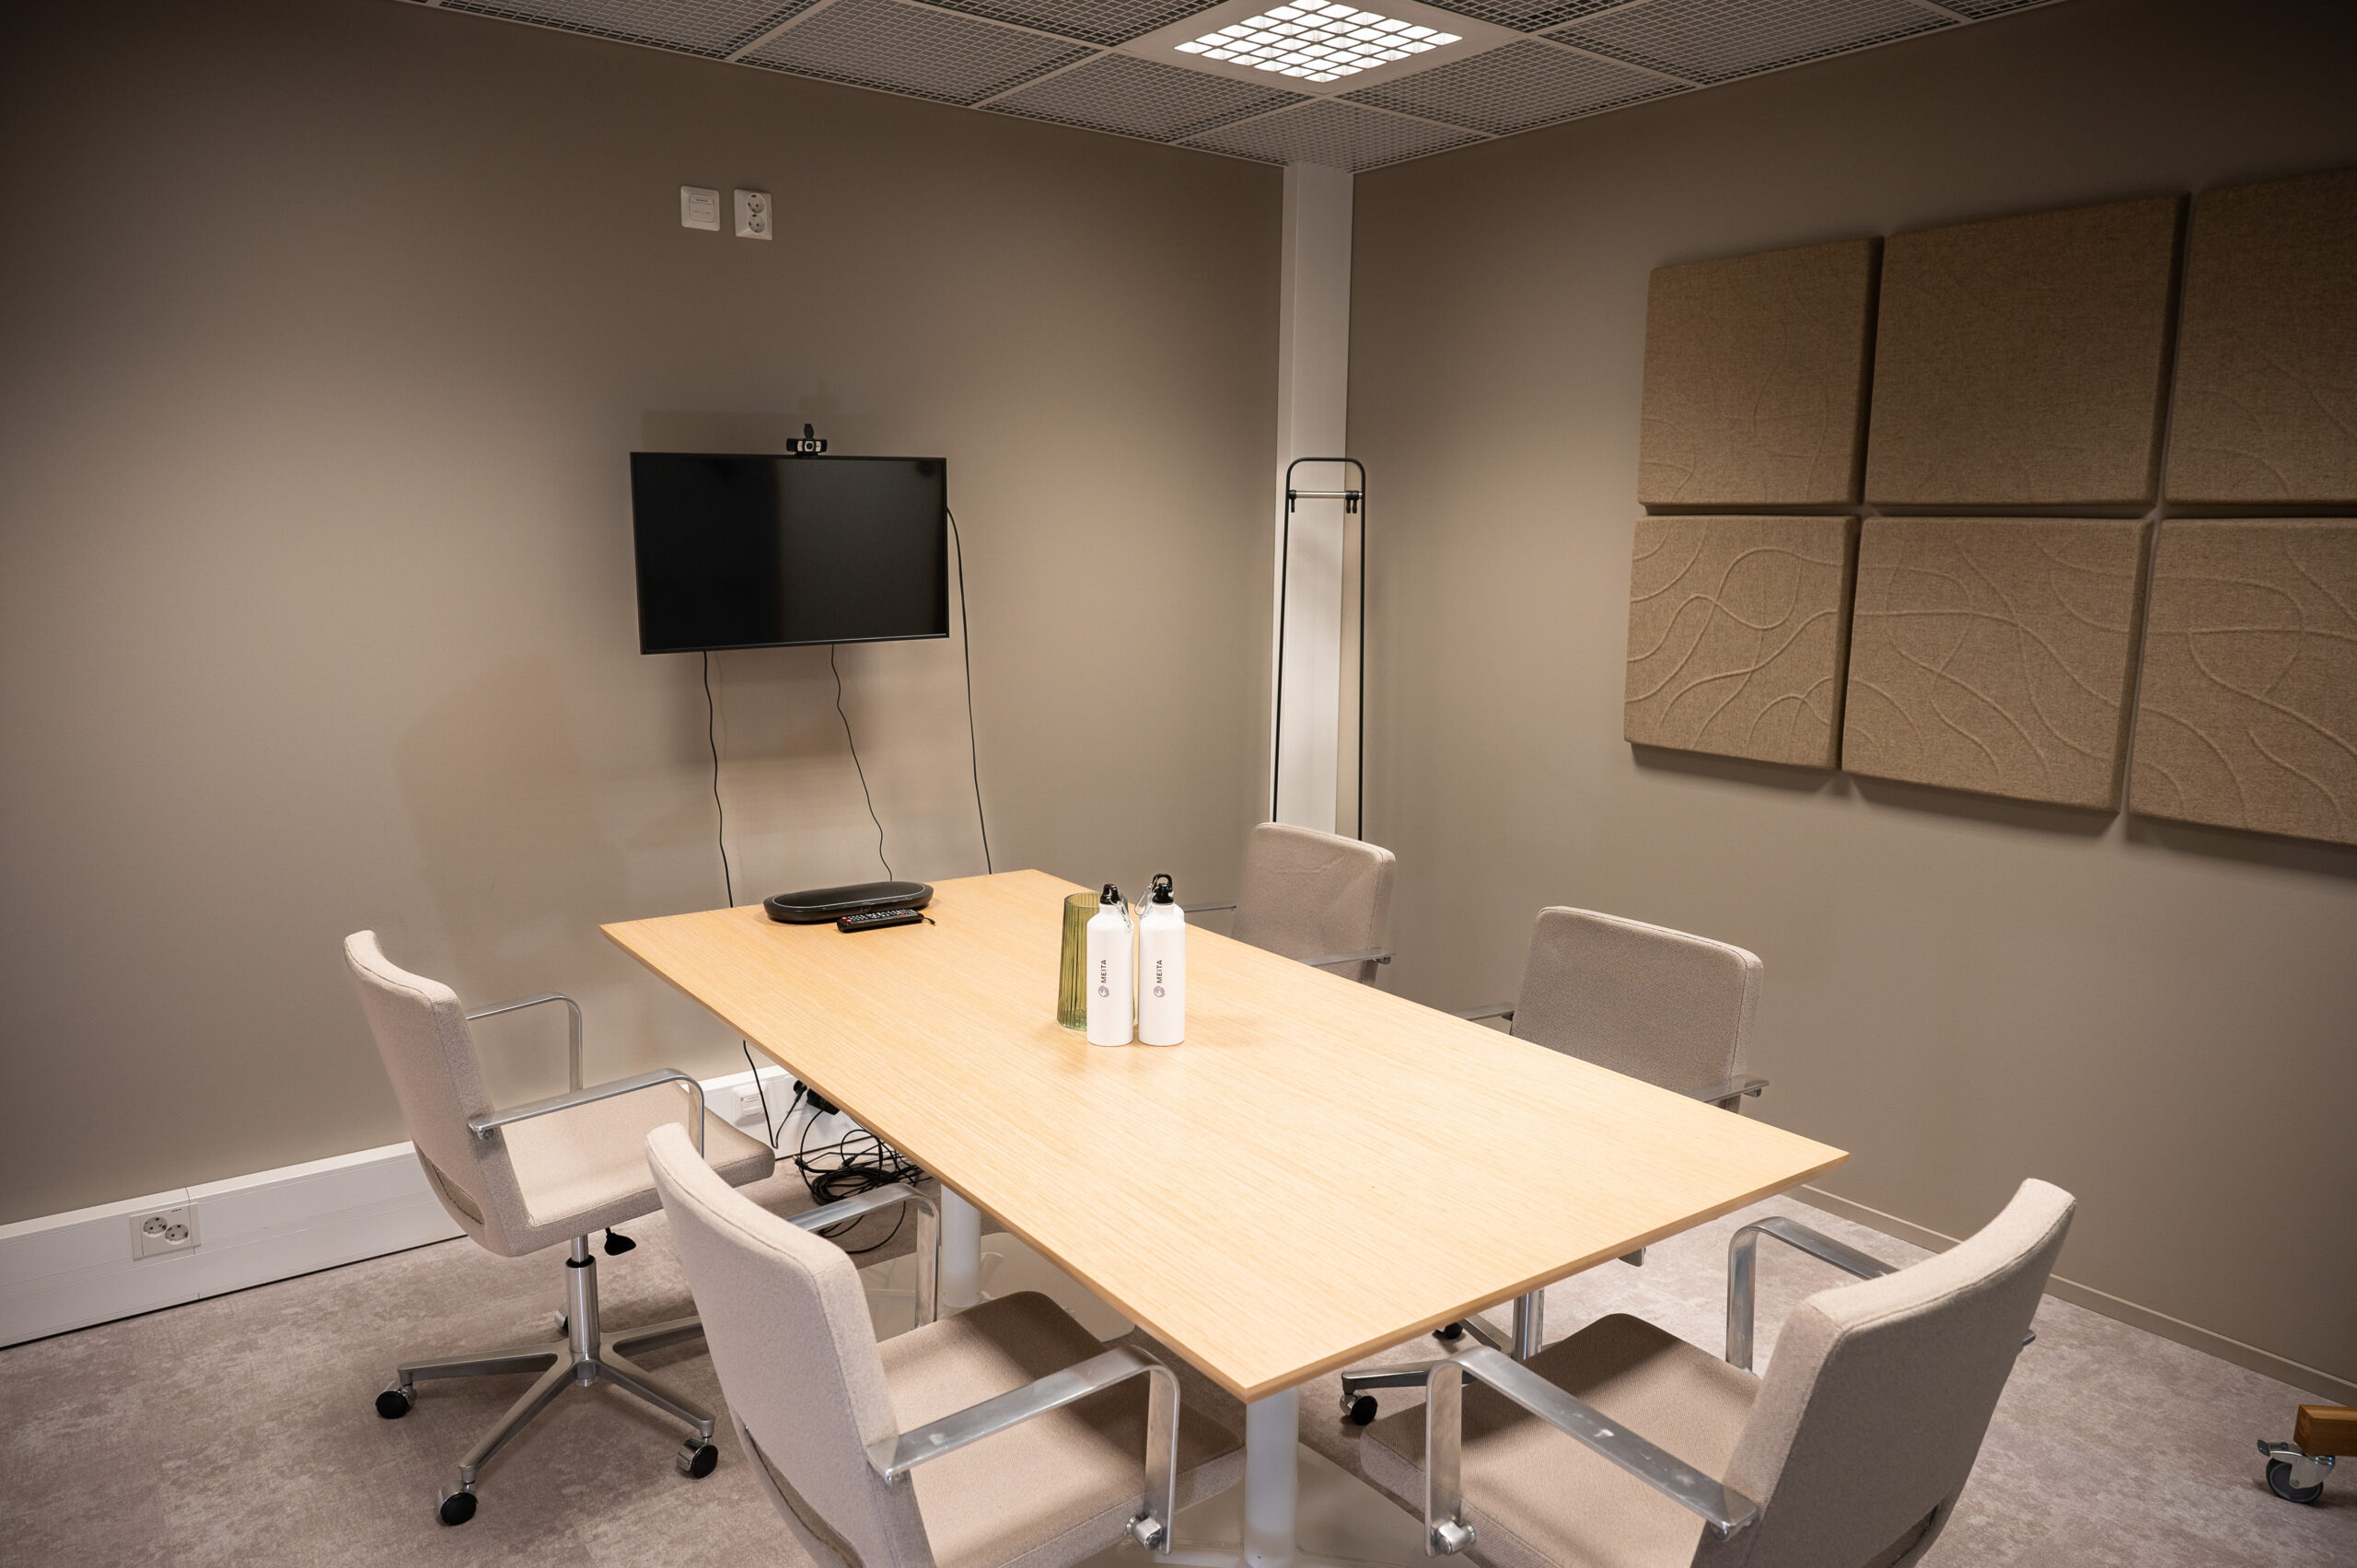 Tässä kuvassa on yksi Meitan toimiston neuvotteluhuoneista, jossa on pöytä tuoleineen sekä seinällä näyttö ja äänieristelevyt